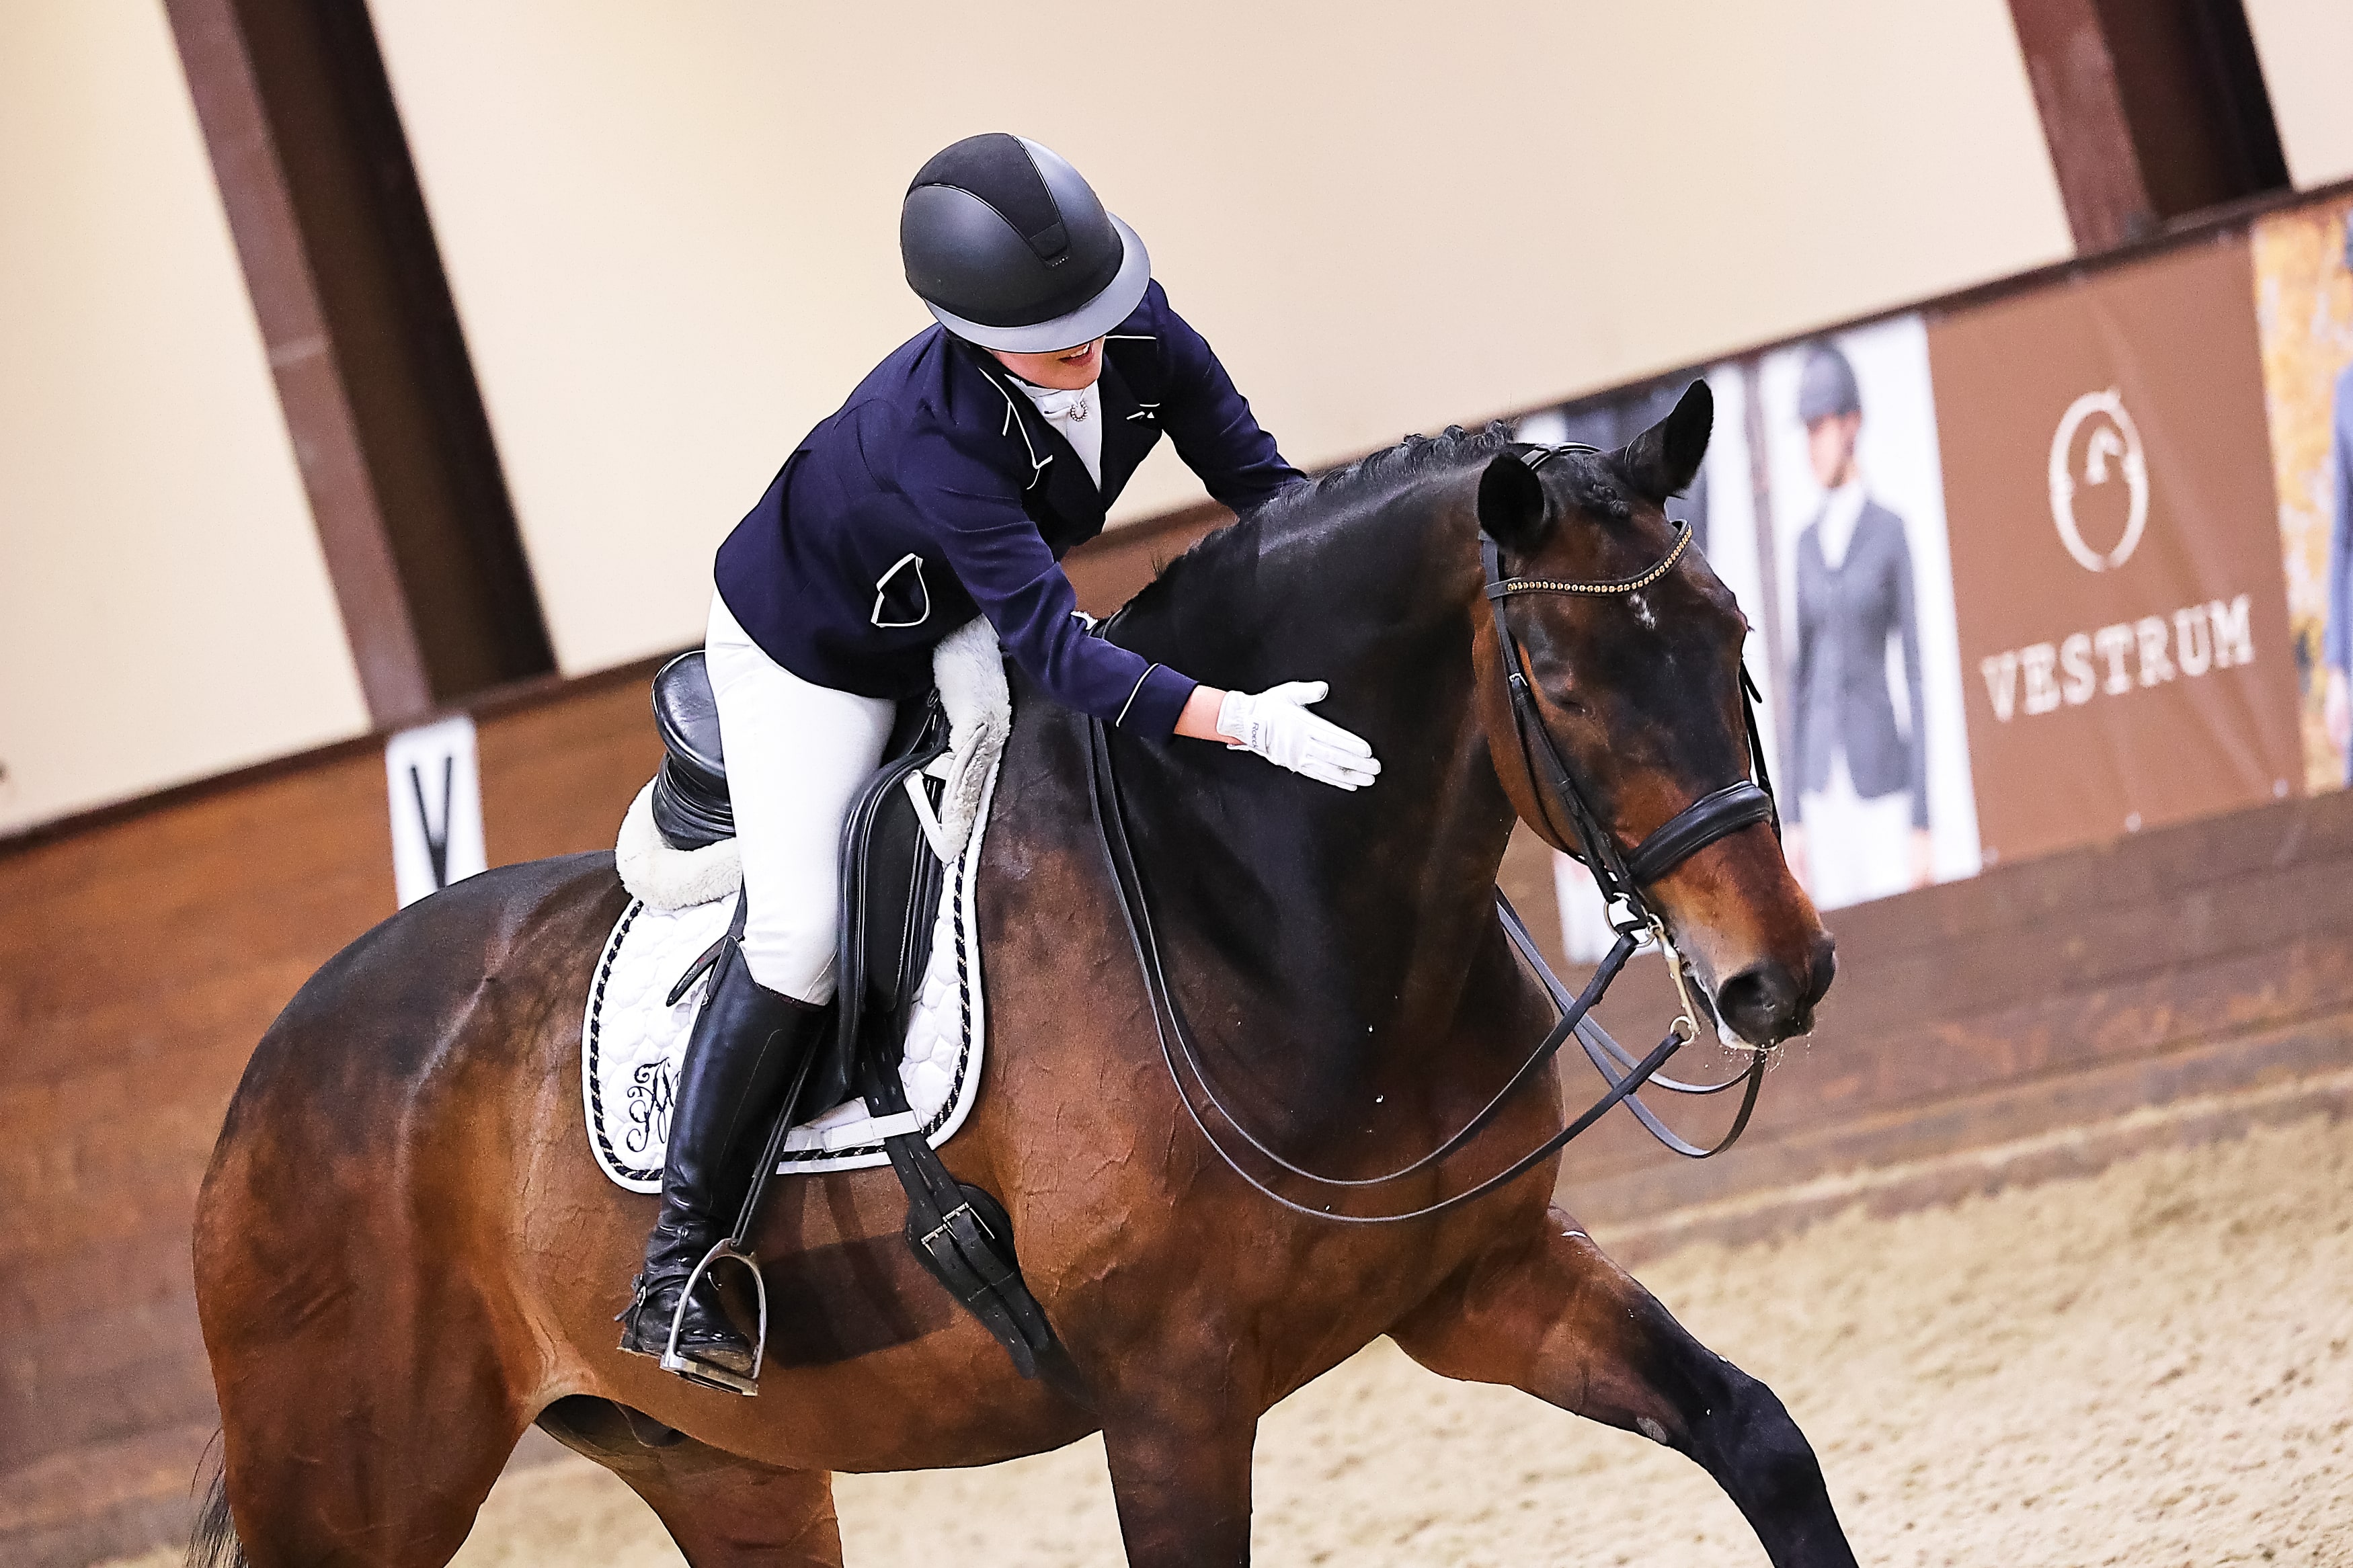 Фото: Пресс-служба Федерации конного спорта России